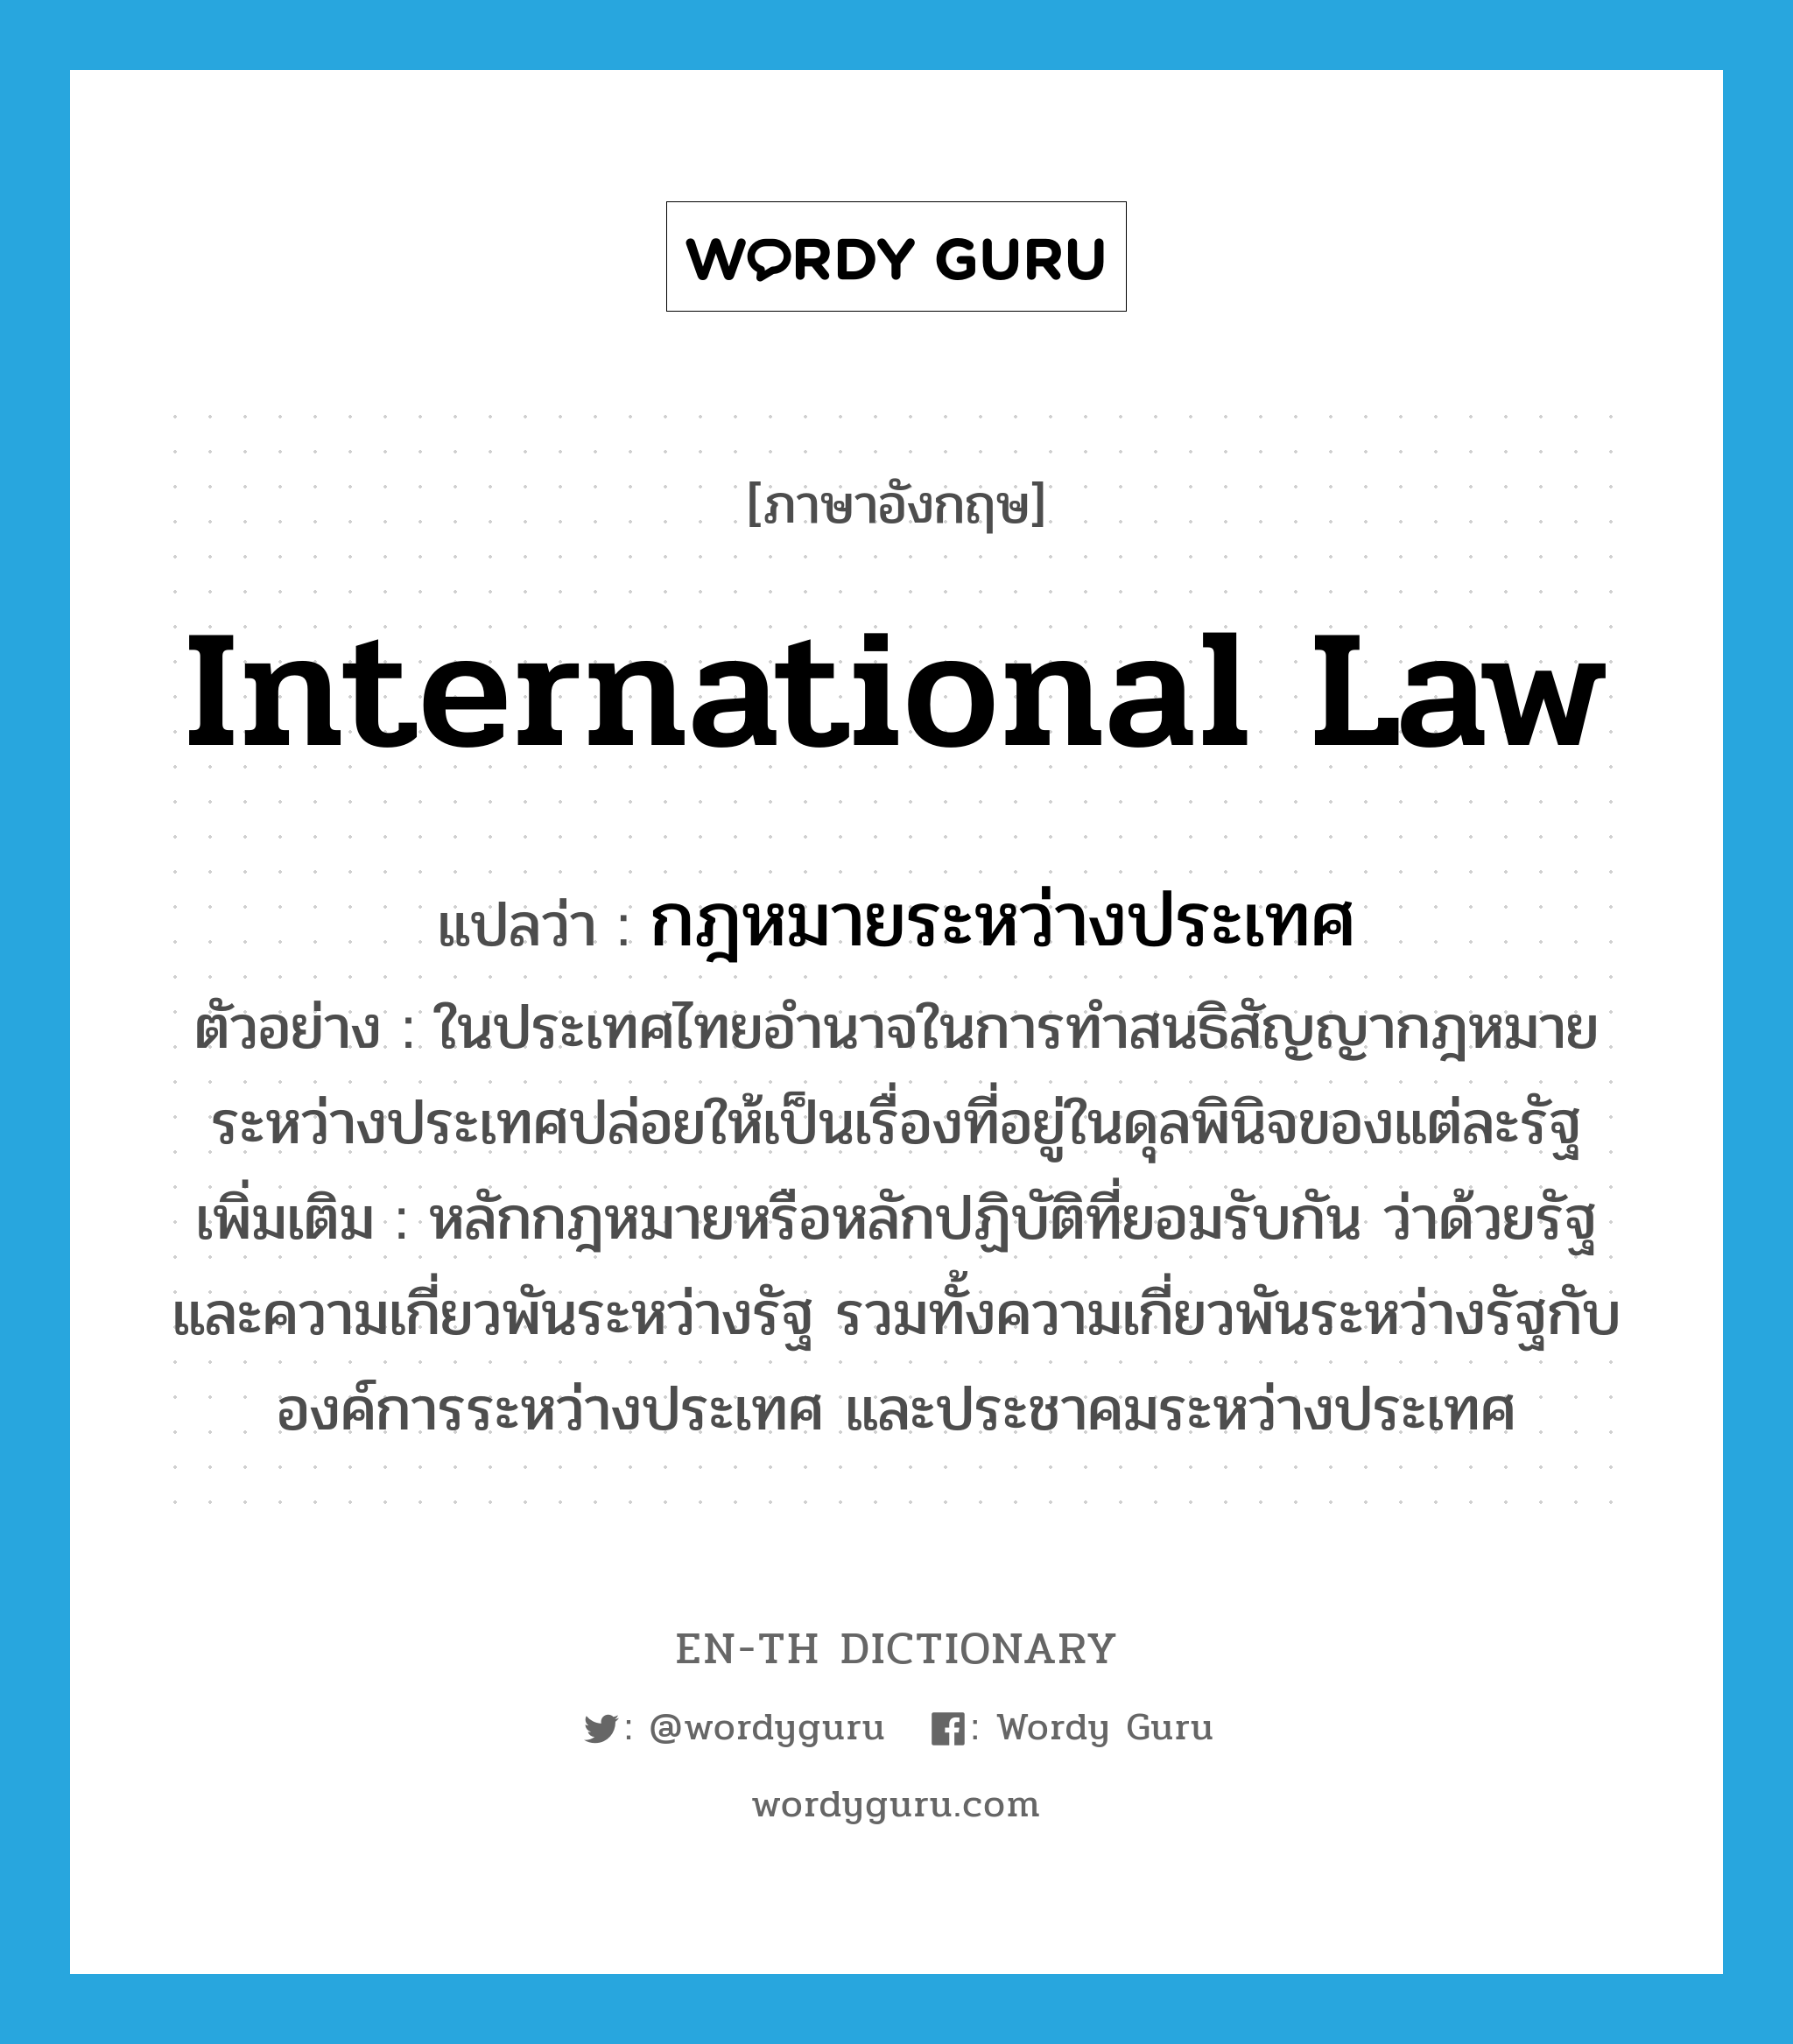 กฎหมายระหว่างประเทศ ภาษาอังกฤษ?, คำศัพท์ภาษาอังกฤษ กฎหมายระหว่างประเทศ แปลว่า international law ประเภท N ตัวอย่าง ในประเทศไทยอำนาจในการทำสนธิสัญญากฎหมายระหว่างประเทศปล่อยให้เป็นเรื่องที่อยู่ในดุลพินิจของแต่ละรัฐ เพิ่มเติม หลักกฎหมายหรือหลักปฏิบัติที่ยอมรับกัน ว่าด้วยรัฐ และความเกี่ยวพันระหว่างรัฐ รวมทั้งความเกี่ยวพันระหว่างรัฐกับองค์การระหว่างประเทศ และประชาคมระหว่างประเทศ หมวด N